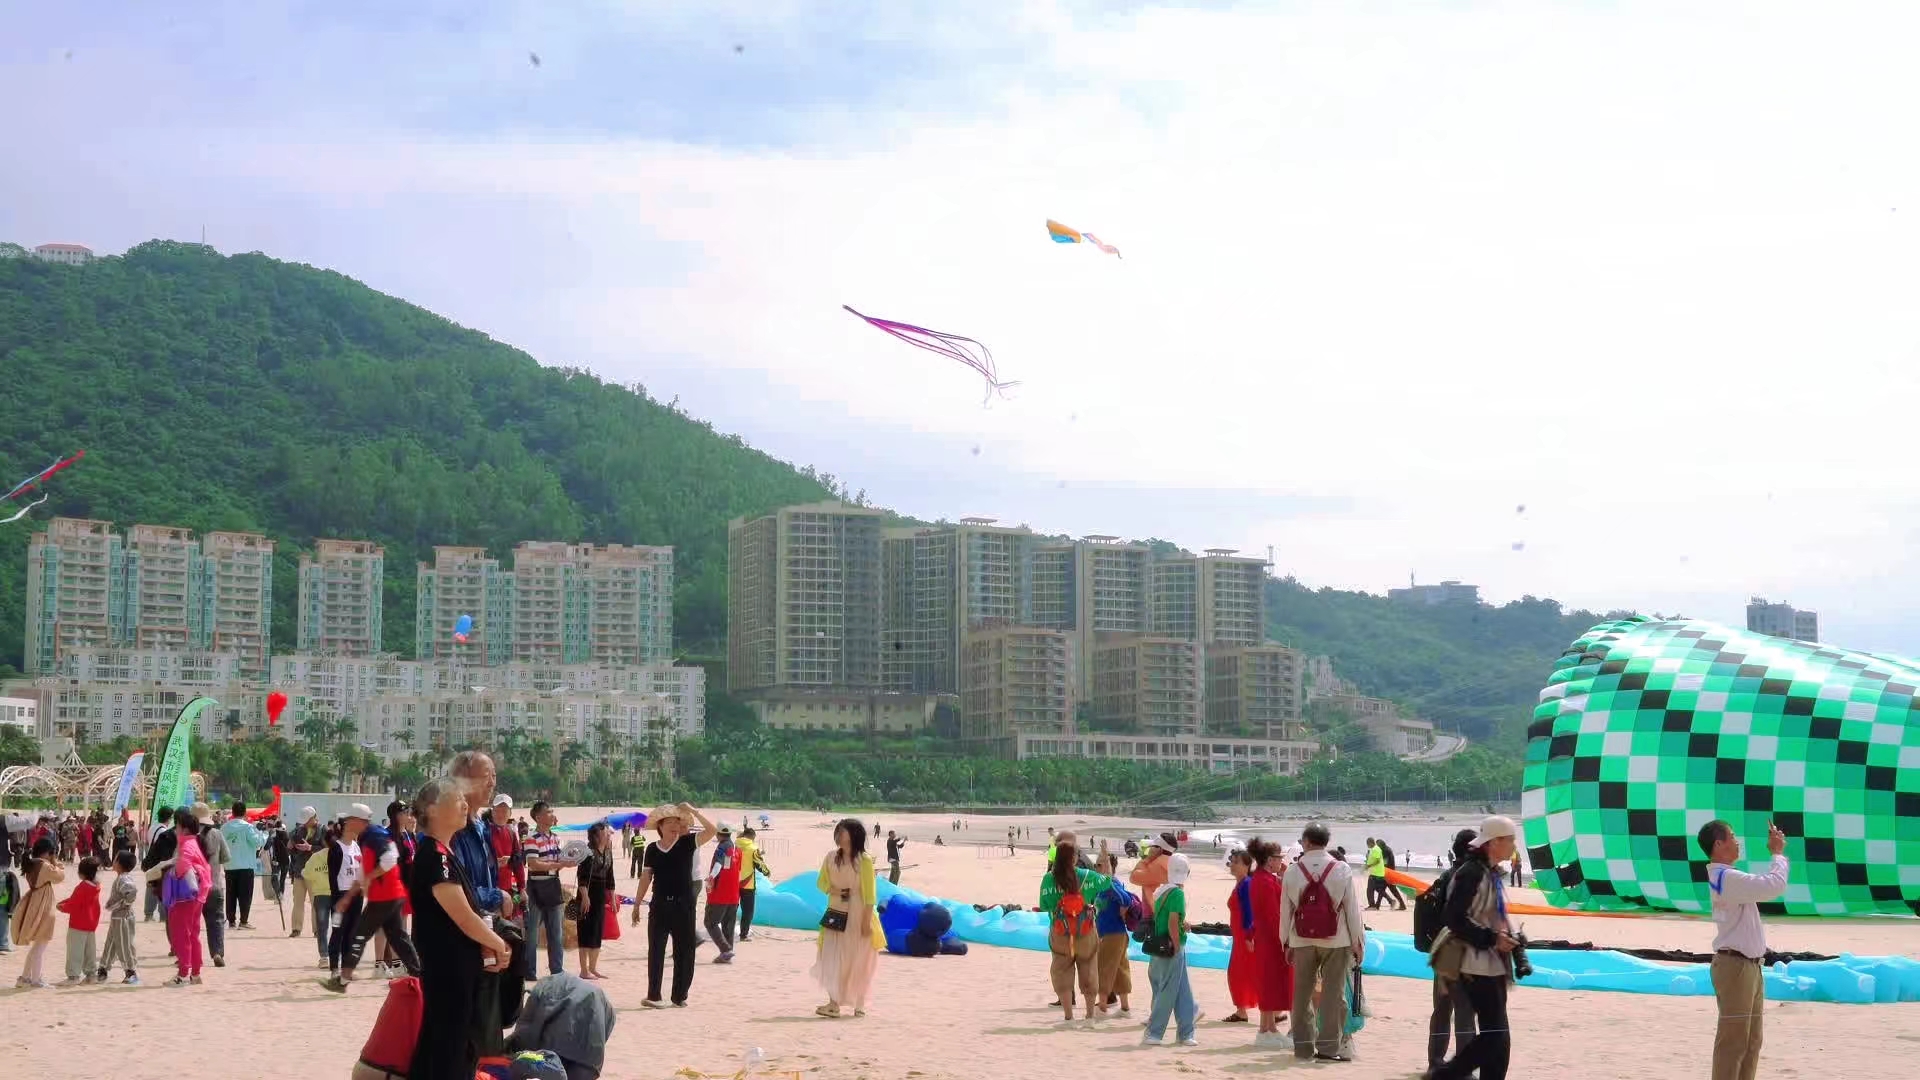 到場的市民群眾，有幾歲的幼童，也有兩鬢斑白的老人，匯聚銀灘共同體驗放飛風箏的快樂。張杰攝